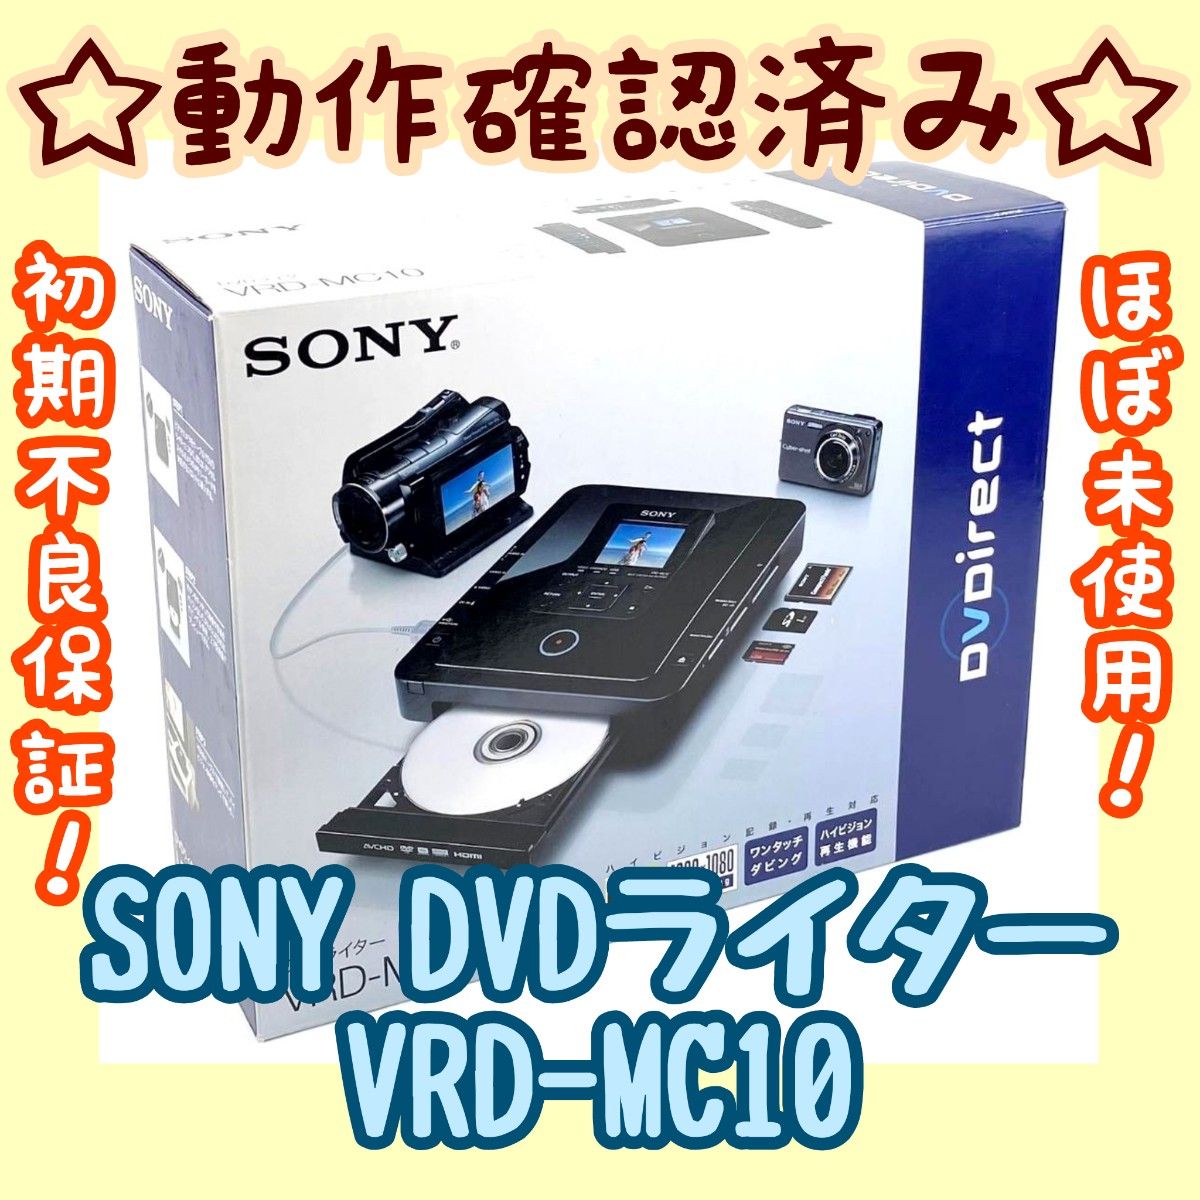 直売販促品 SONY VRD-MC10 DVDライター - テレビ/映像機器